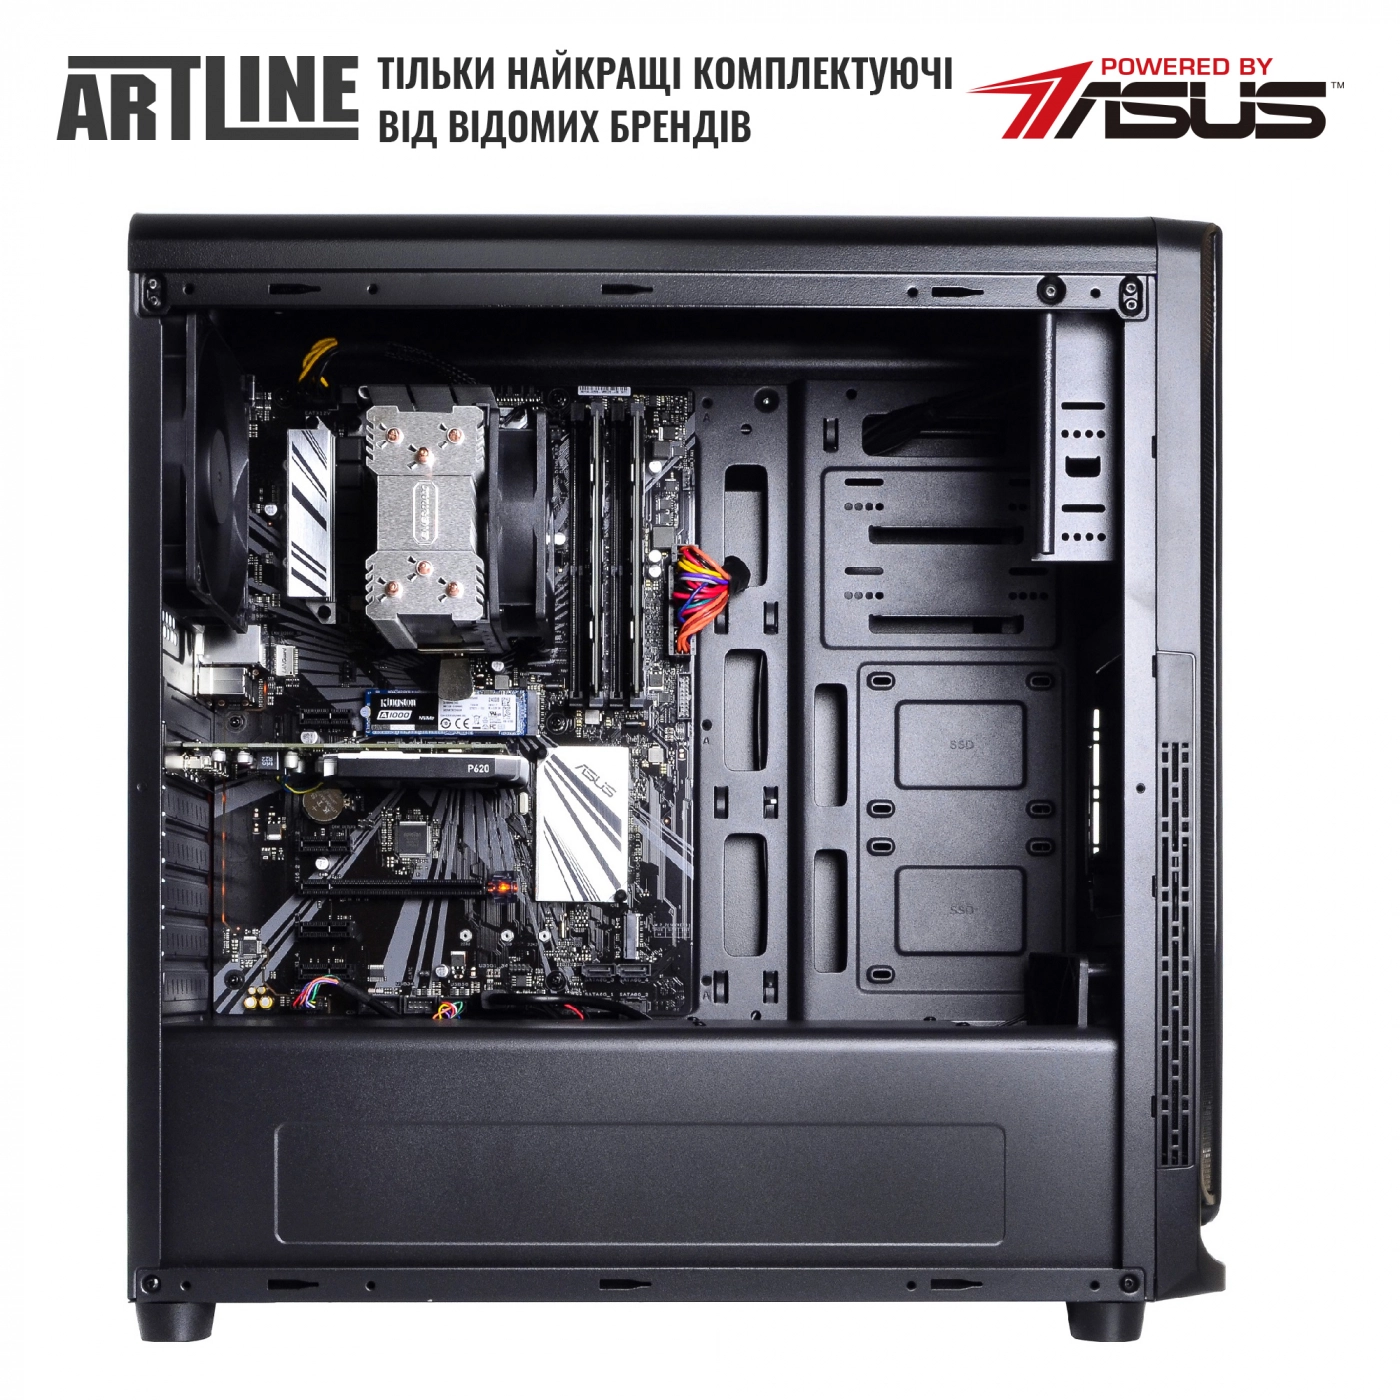 Купить Сервер ARTLINE Business T63v09 - фото 5